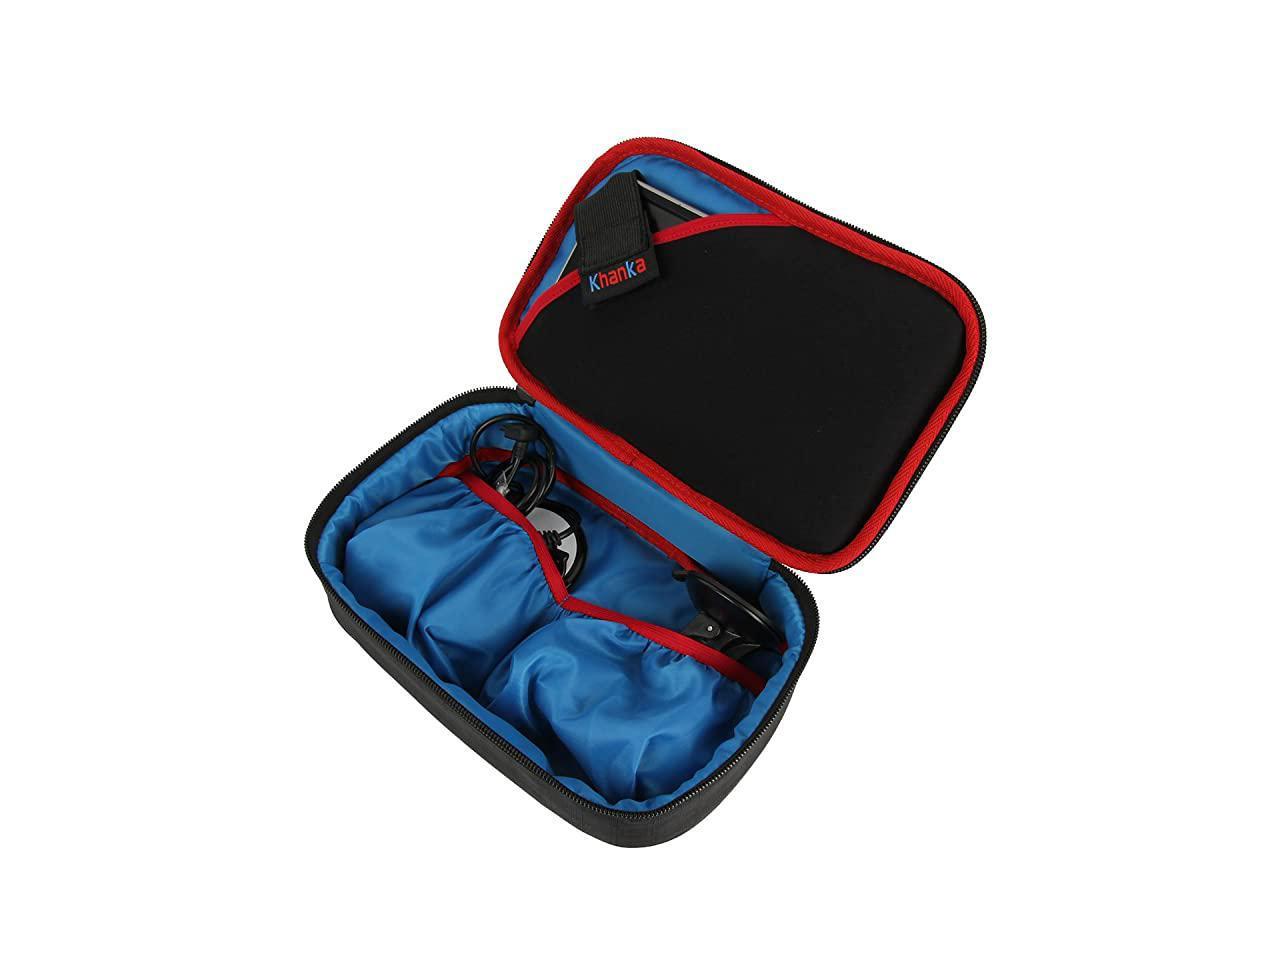 Khanka Storage Carrying Travel Case Bag for 6-7 inch Garmin DriveSmart 70 NA LMT GPS Navigator System Hard